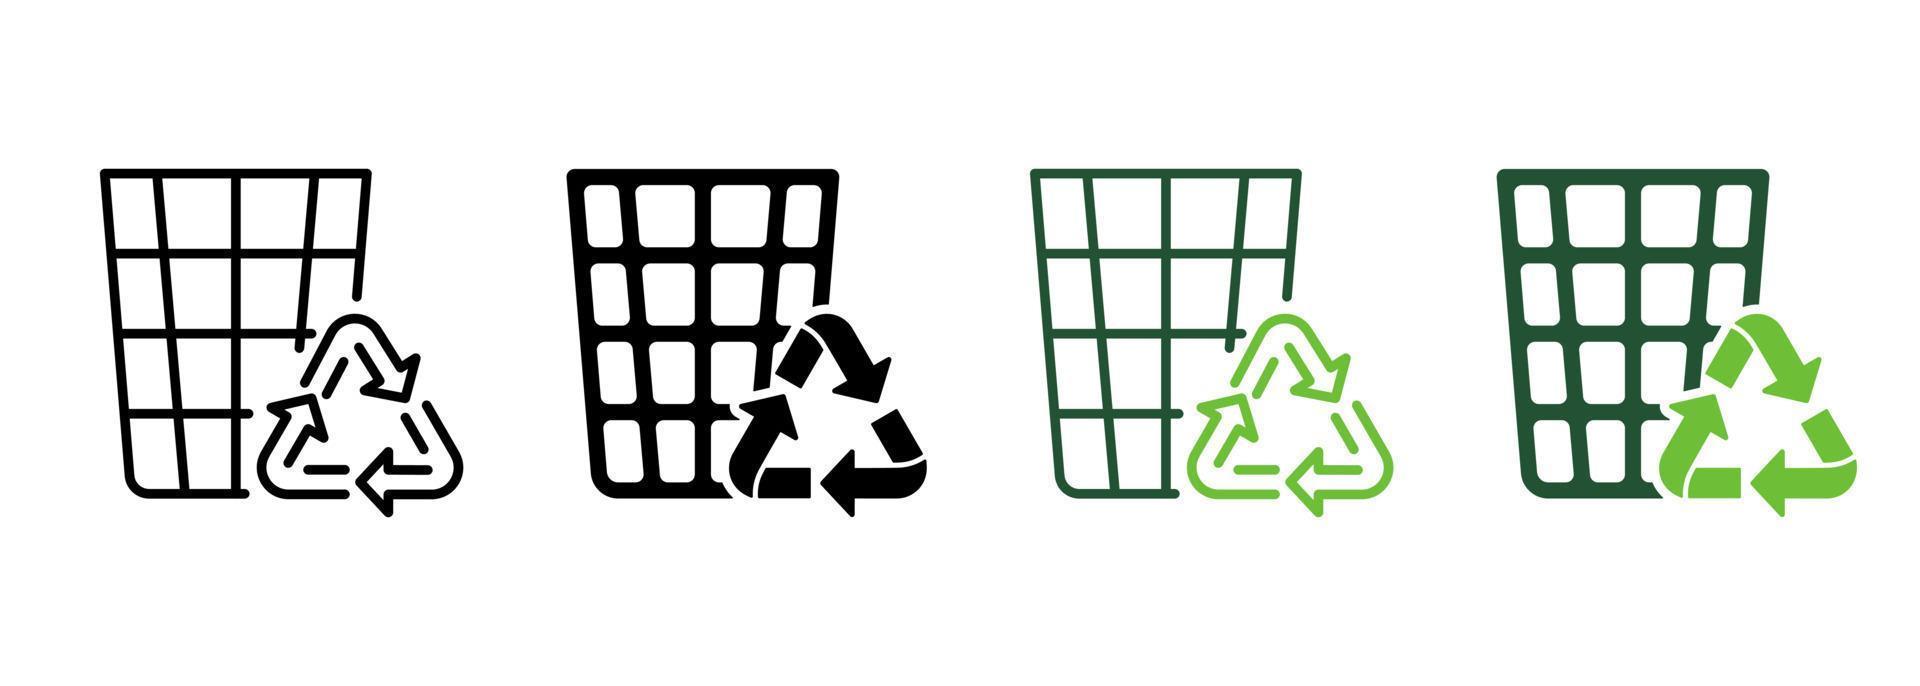 cubo de basura ecológico para línea de basura y conjunto de colores de icono de silueta. papelera ecológica de reciclaje. reciclar la colección de símbolos de cesta de rejilla sobre fondo blanco. reutilizar el signo del contenedor. ilustración vectorial aislada. vector